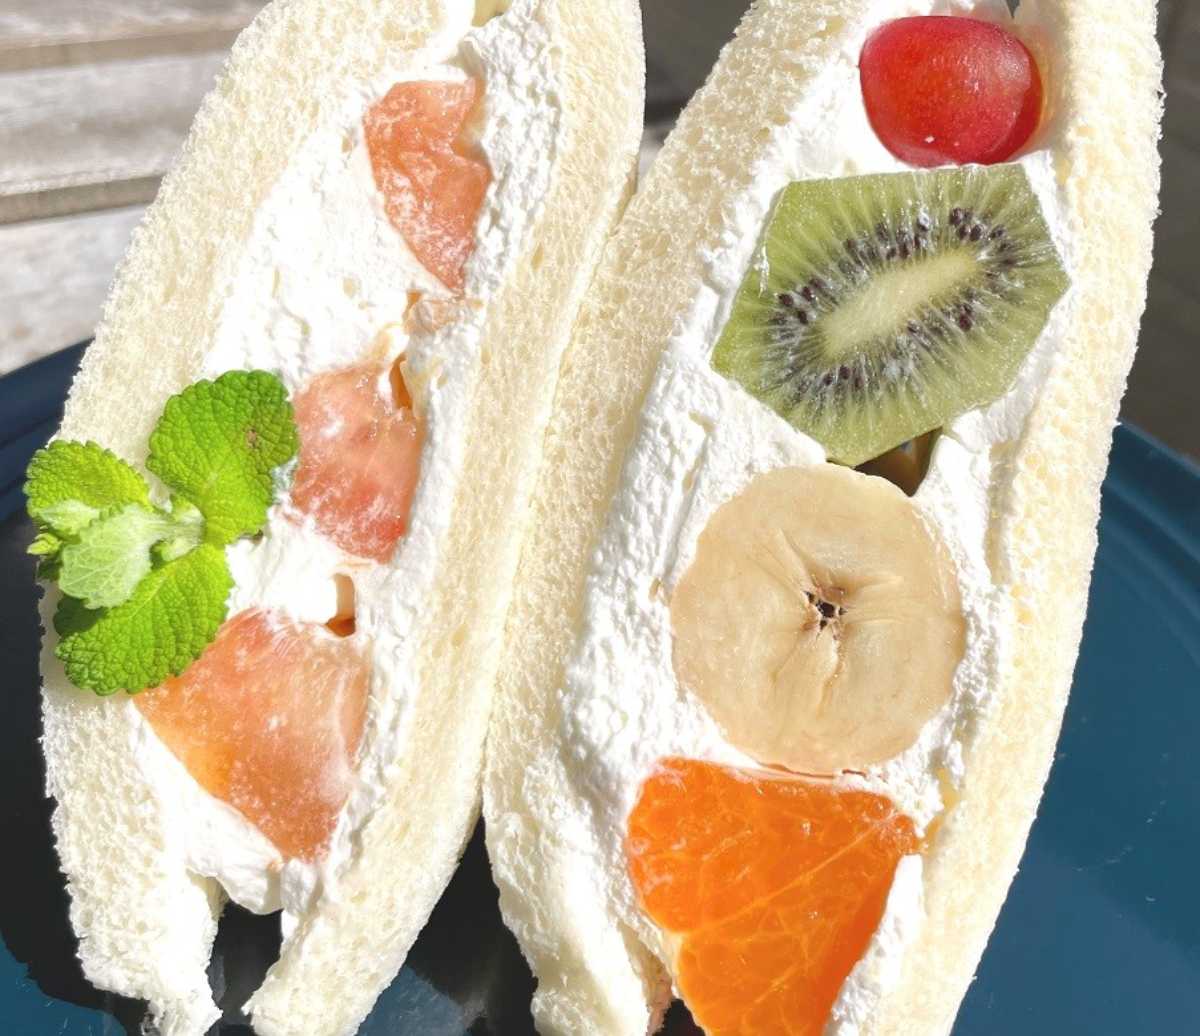 『果菜実サンドイッチラボ』で季節のフルーツサンドを食べてきました　尼崎市 [画像]